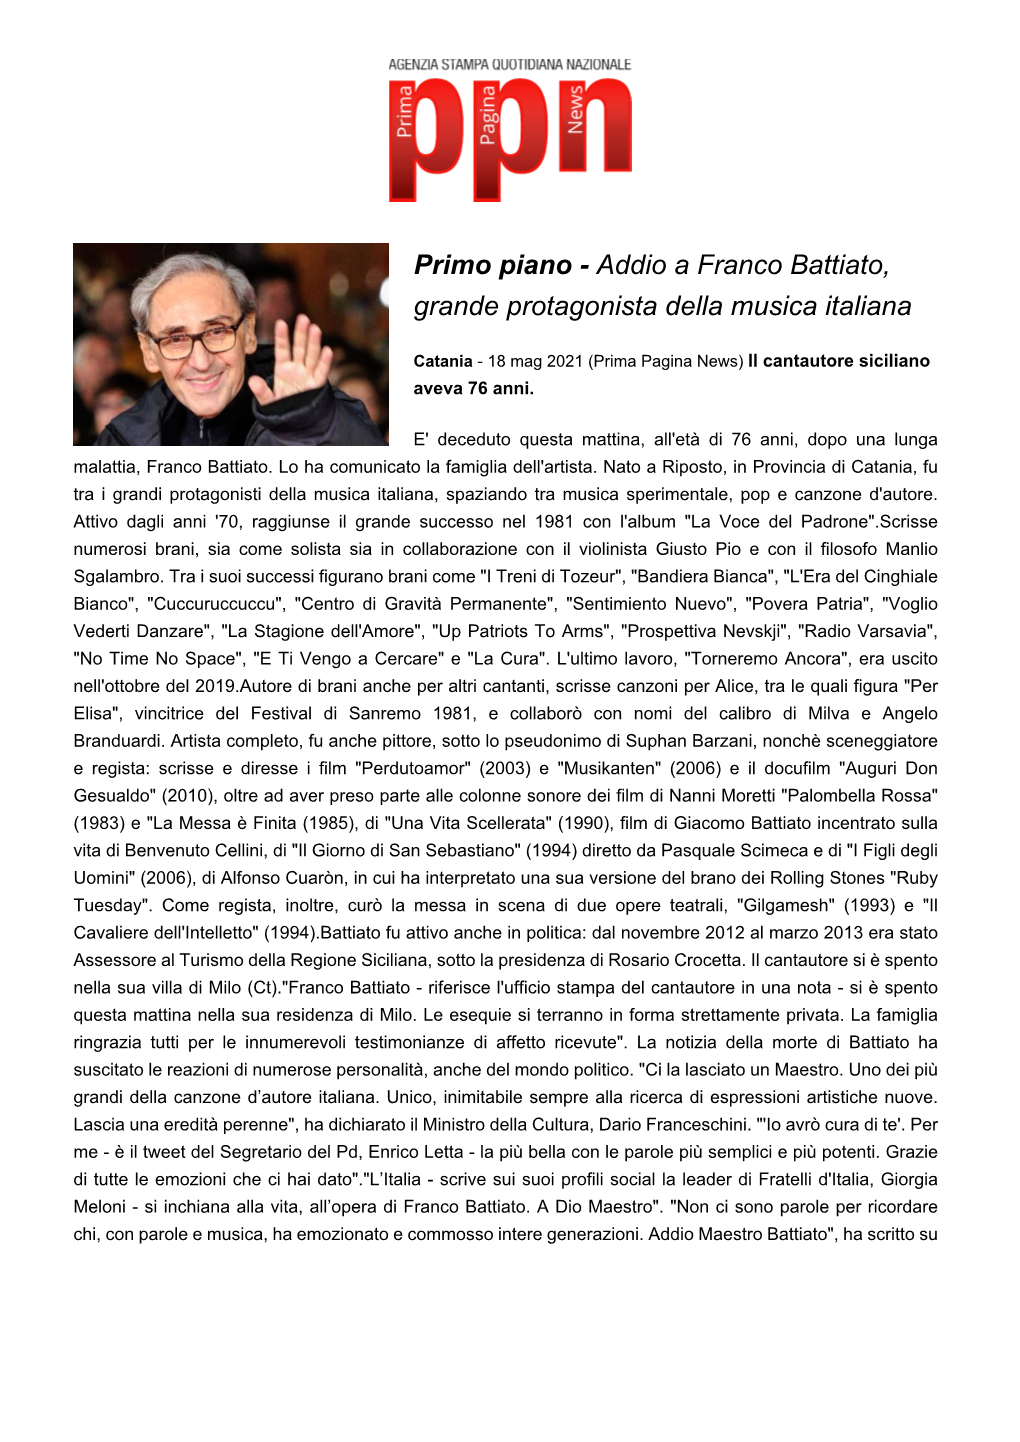 Addio a Franco Battiato, Grande Protagonista Della Musica Italiana